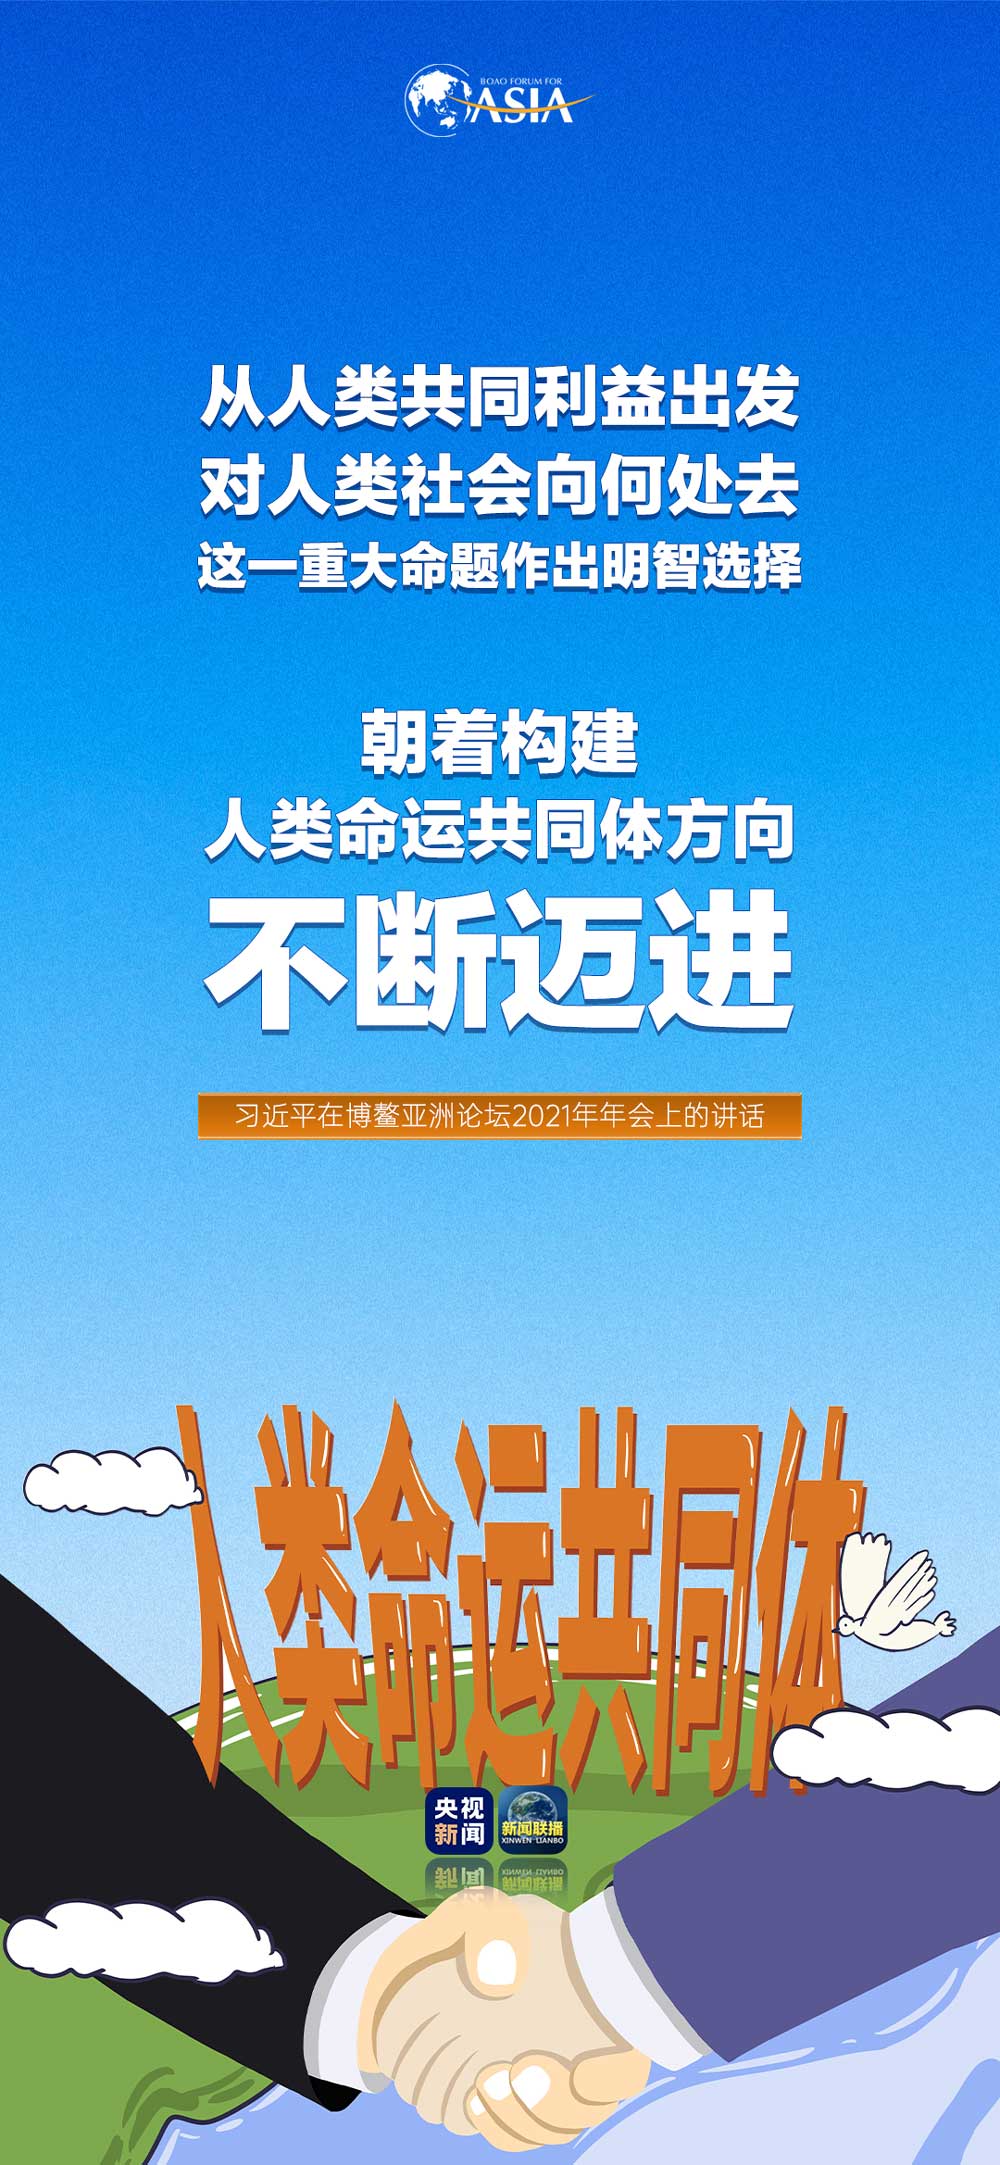 “中华民族精神耀龙都”之大国修建主题展在中国香港揭幕